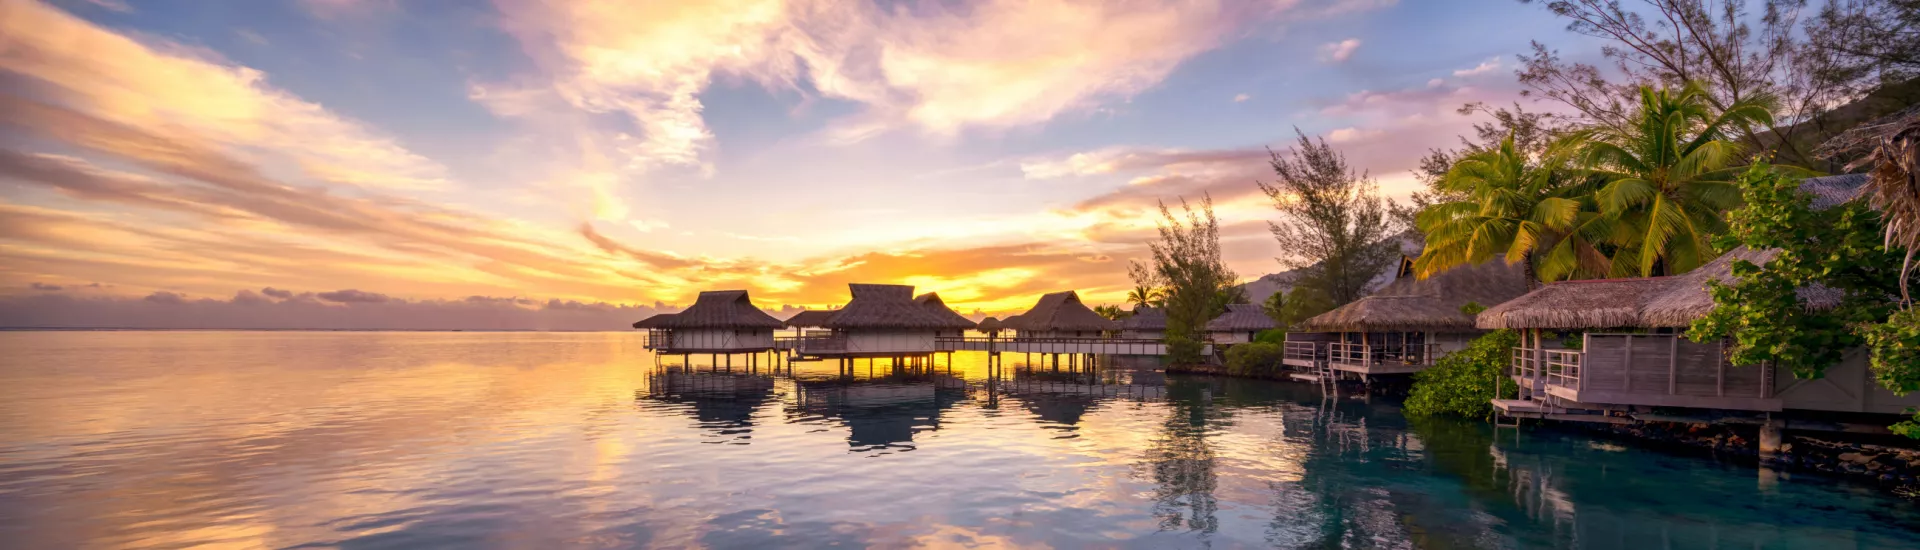 Sonnenuntergang mit orangefarbenem Himmel und Silhouette von Palmen auf den Malediven